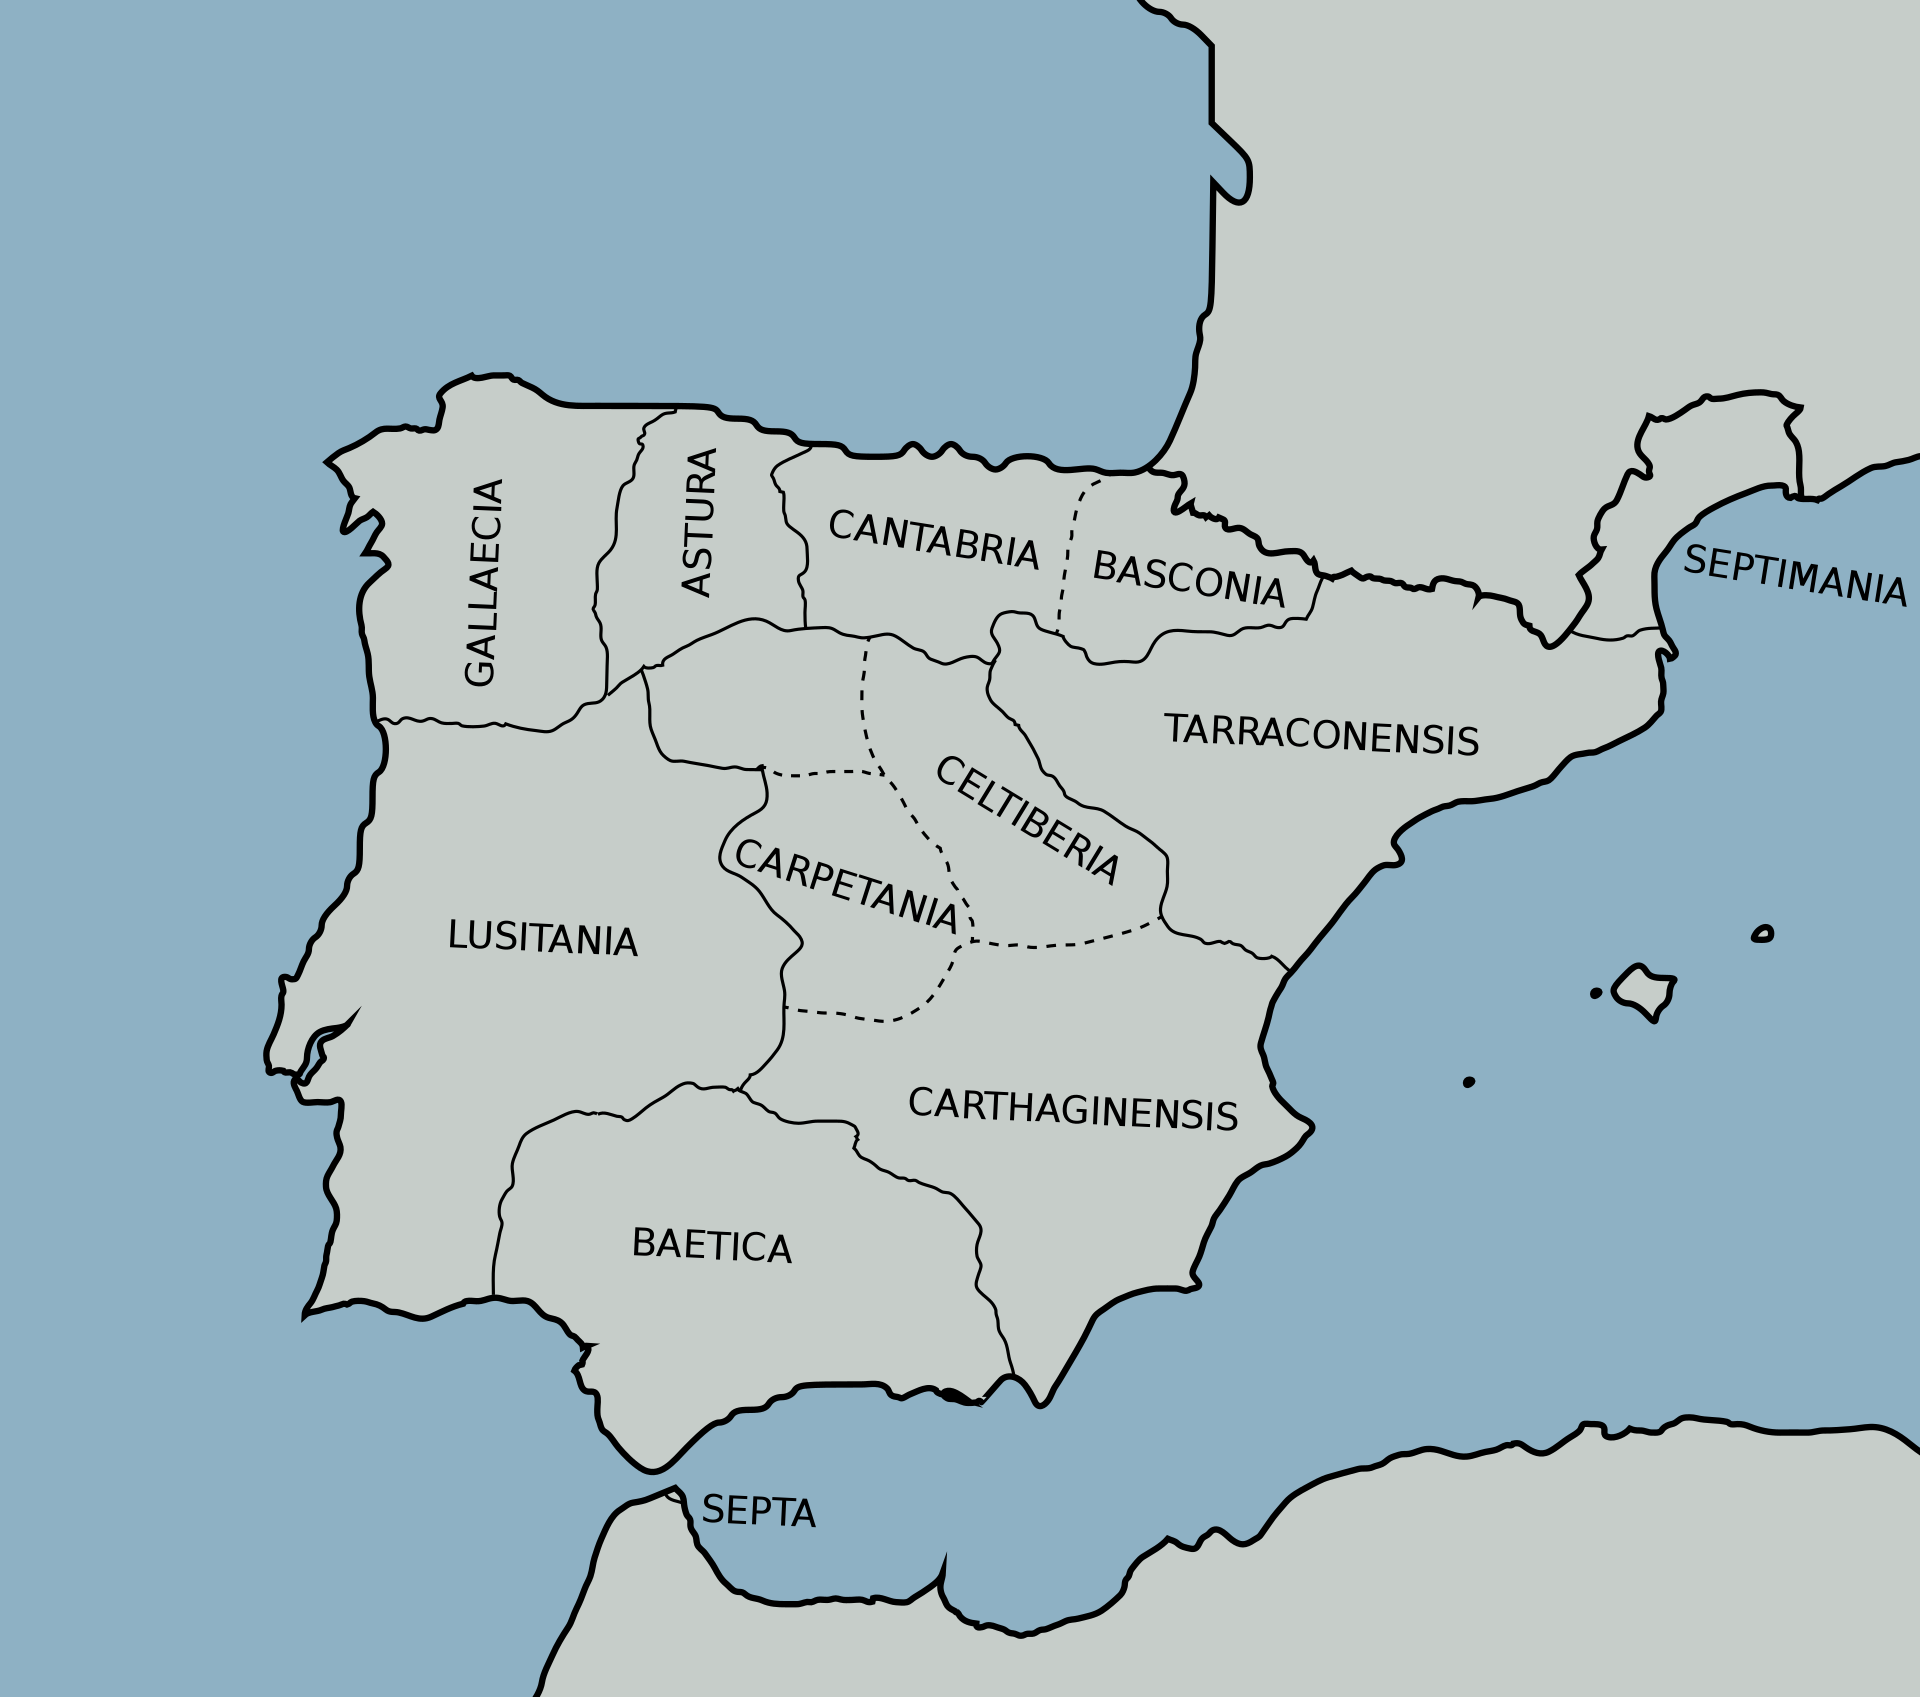 Provincias del reino visigodo hacia el 700. Esta división administrativa tomó en cuenta la manera en que los romanos habían organizado políticamente la región de Hispania durante el Bajo Imperio.